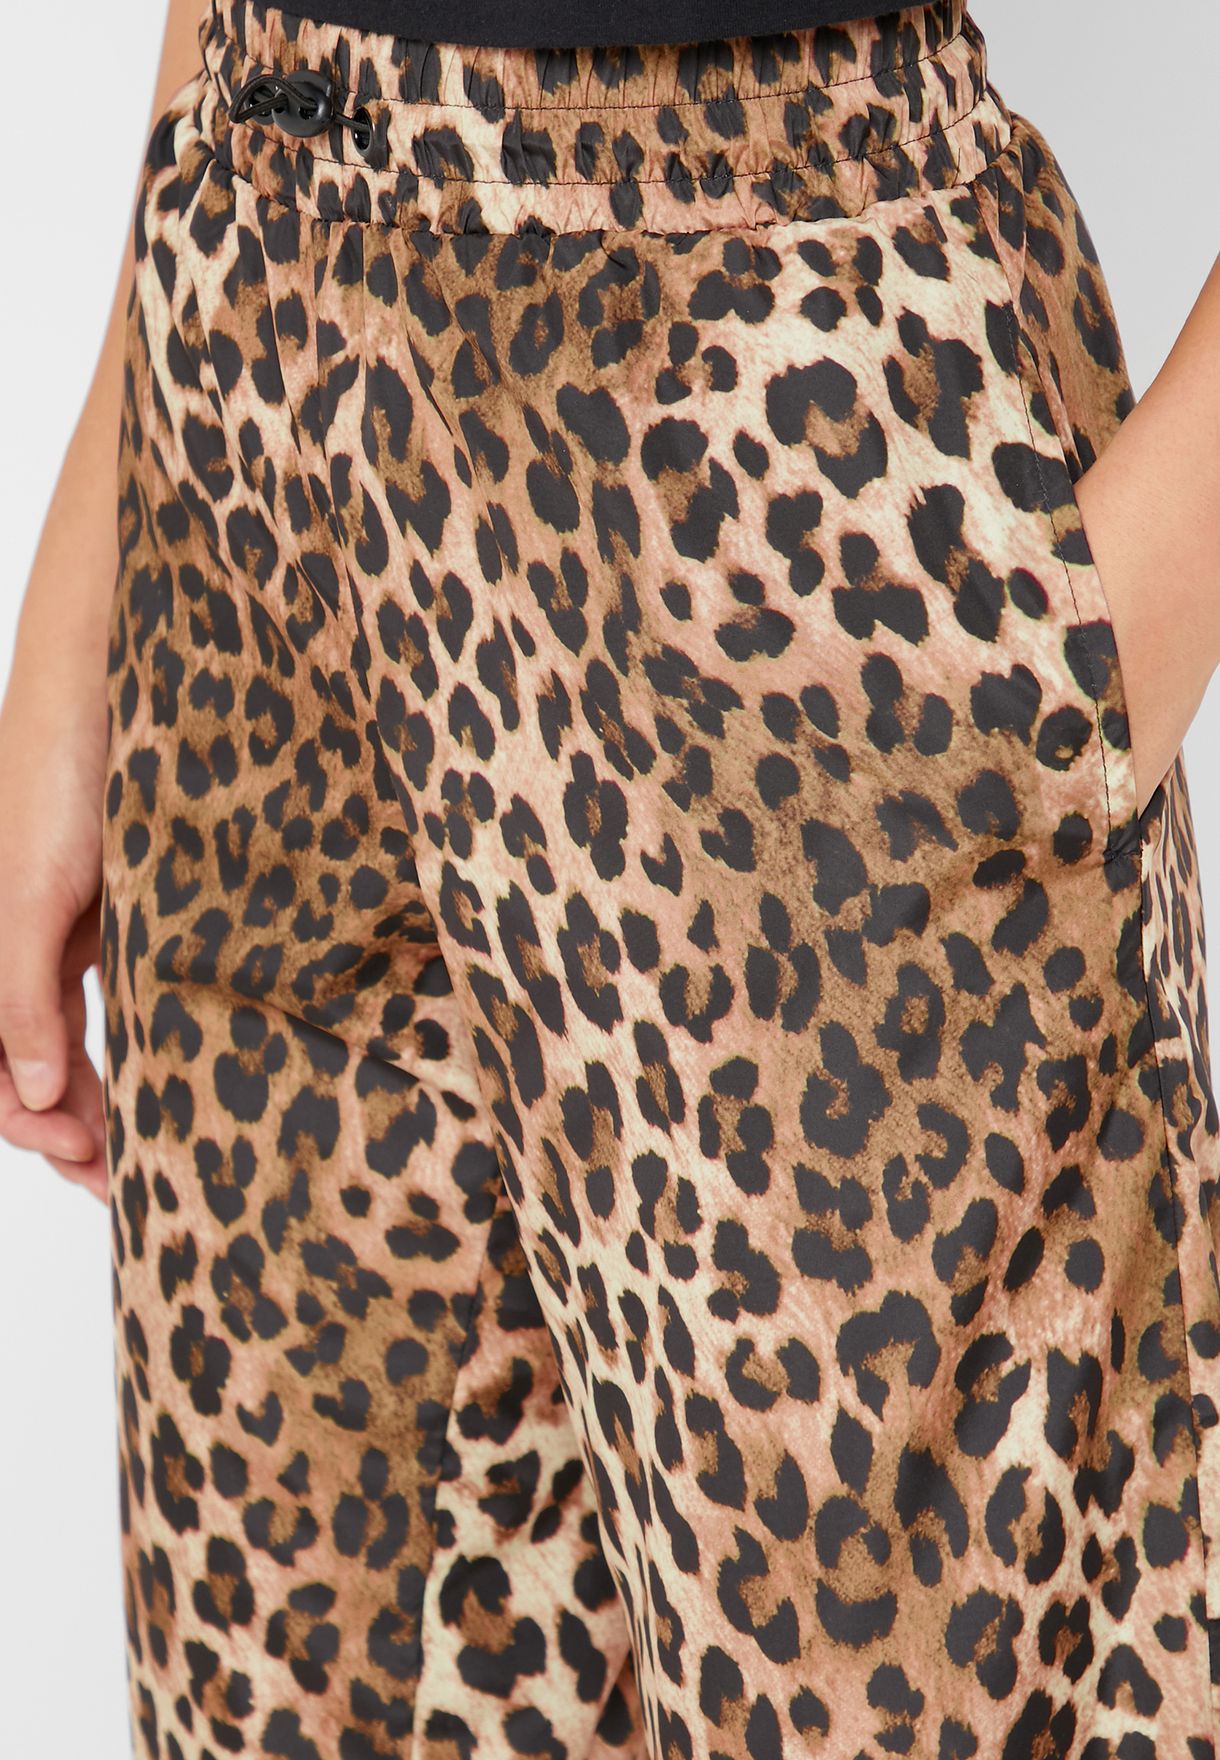 Leopard Print Jogger Pants